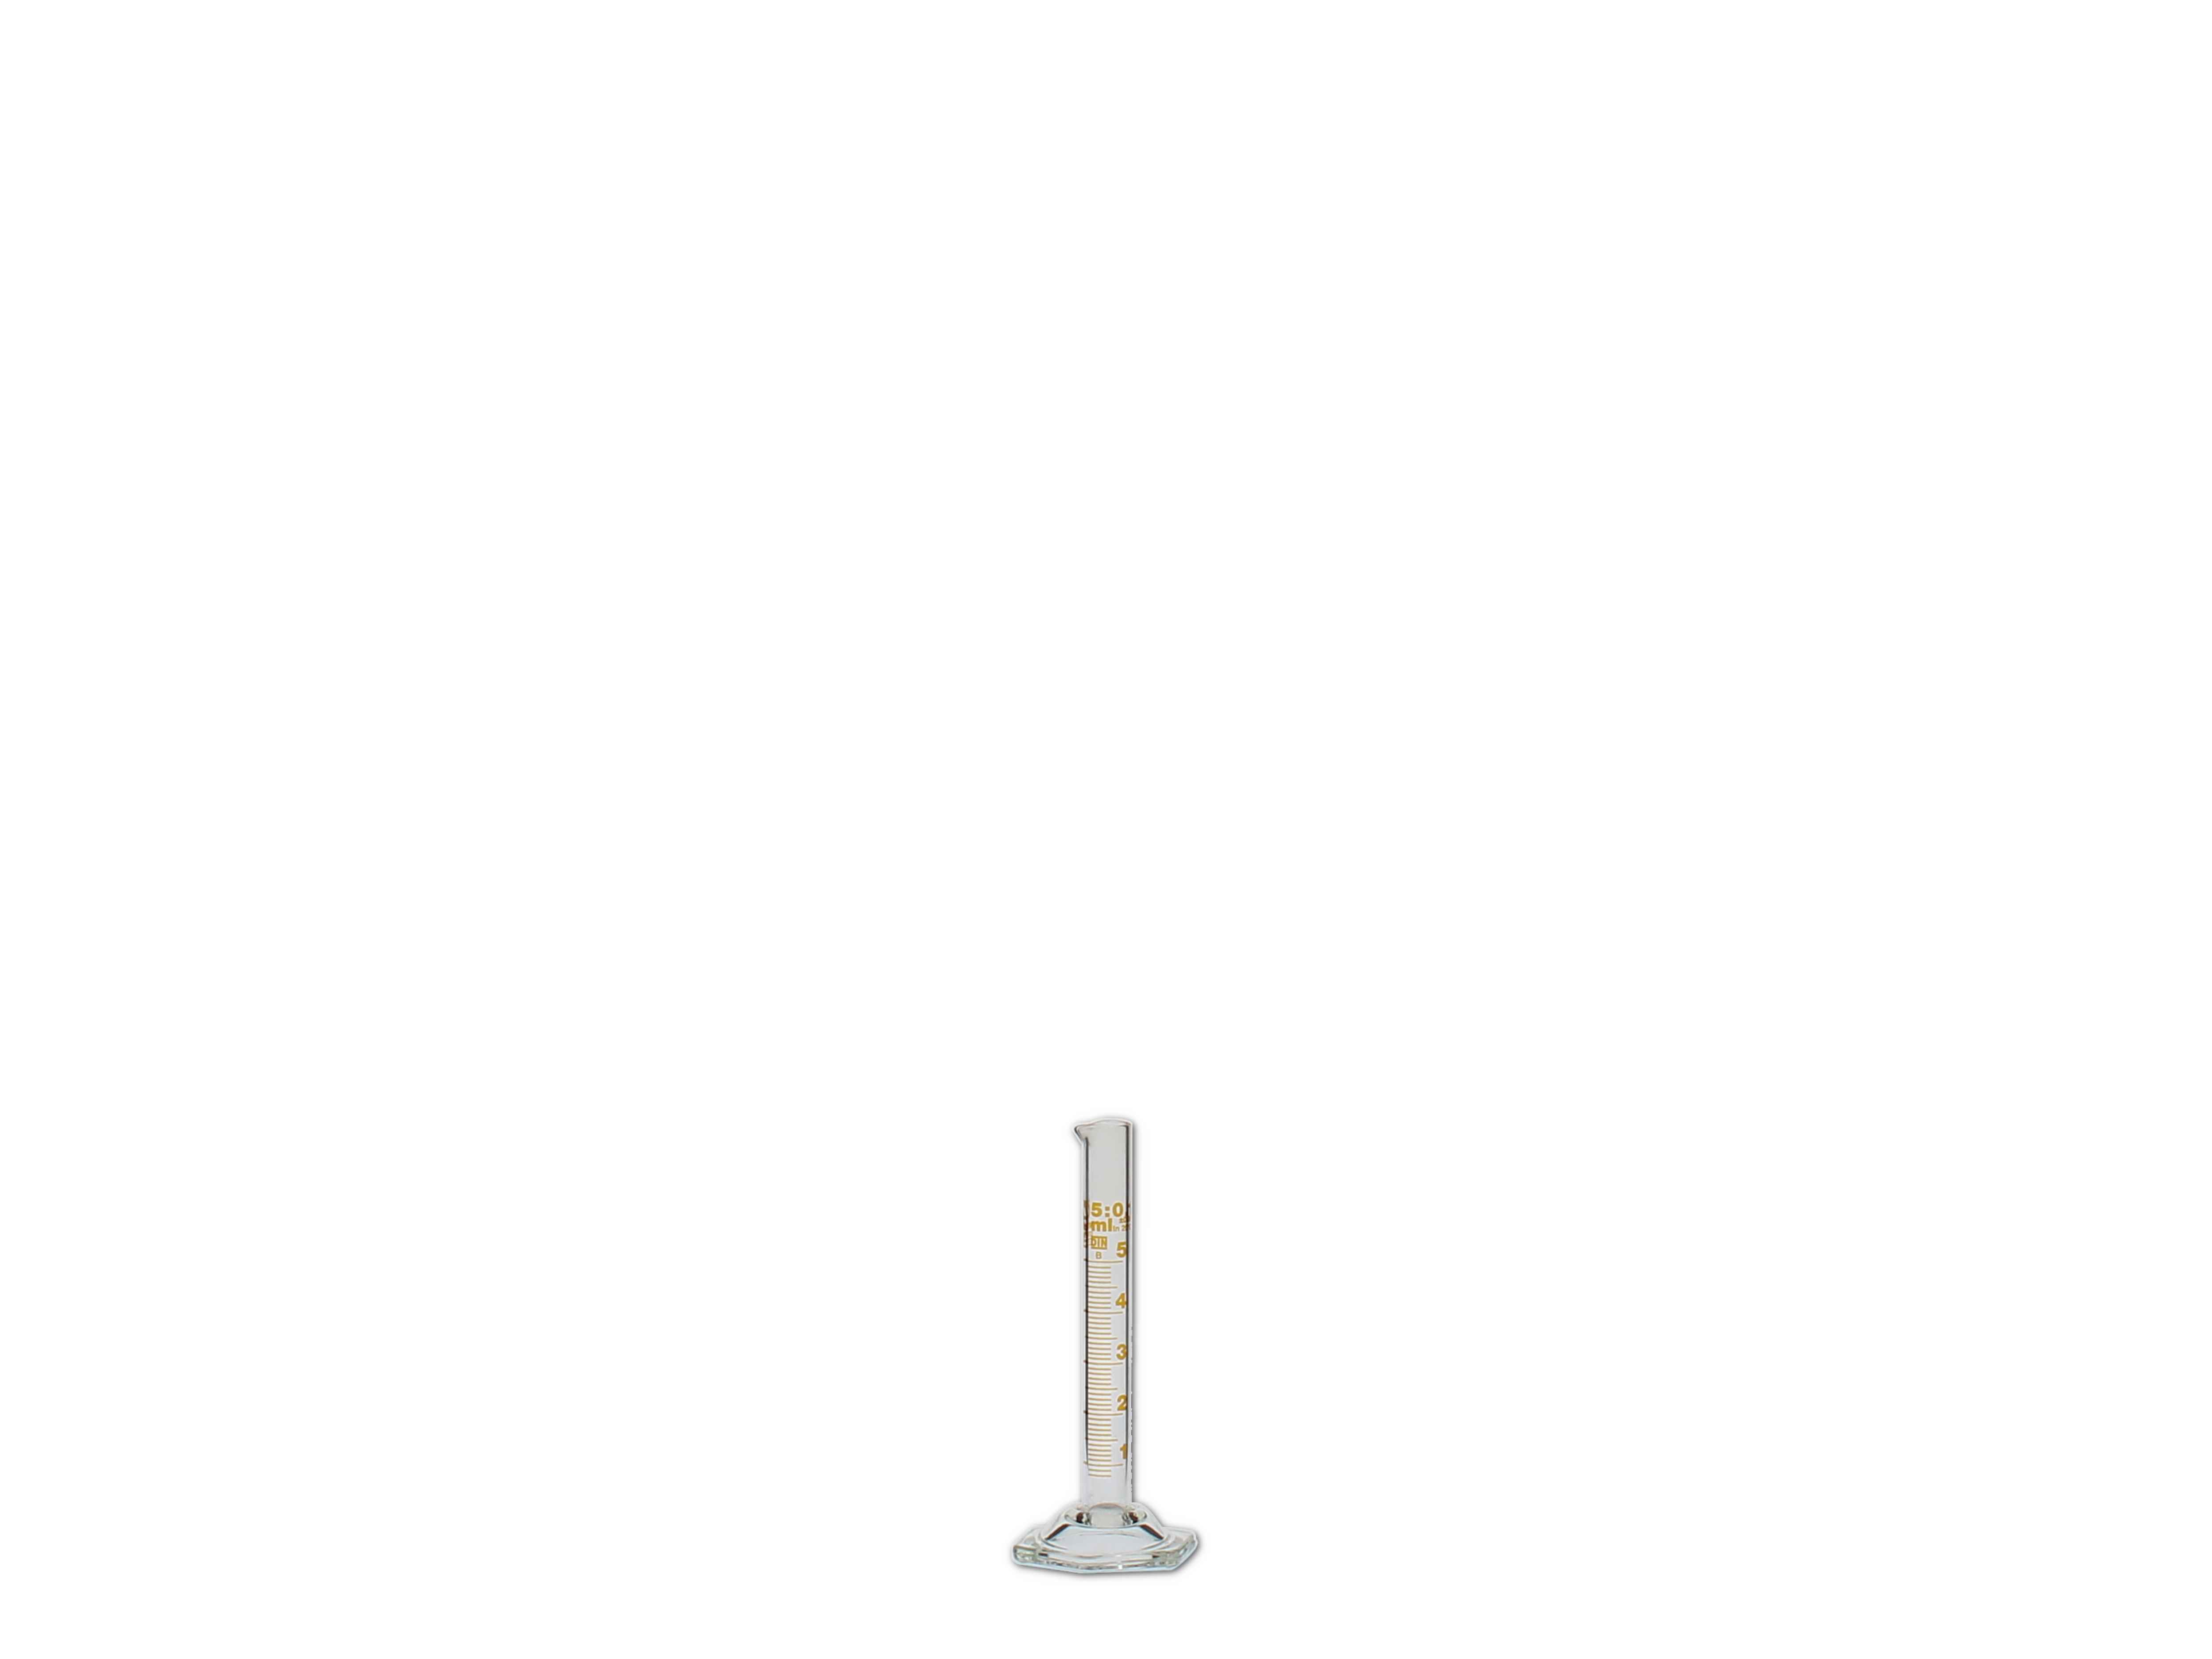    Messzylinder, Glas, graduiert - 5ml (hohe Form)